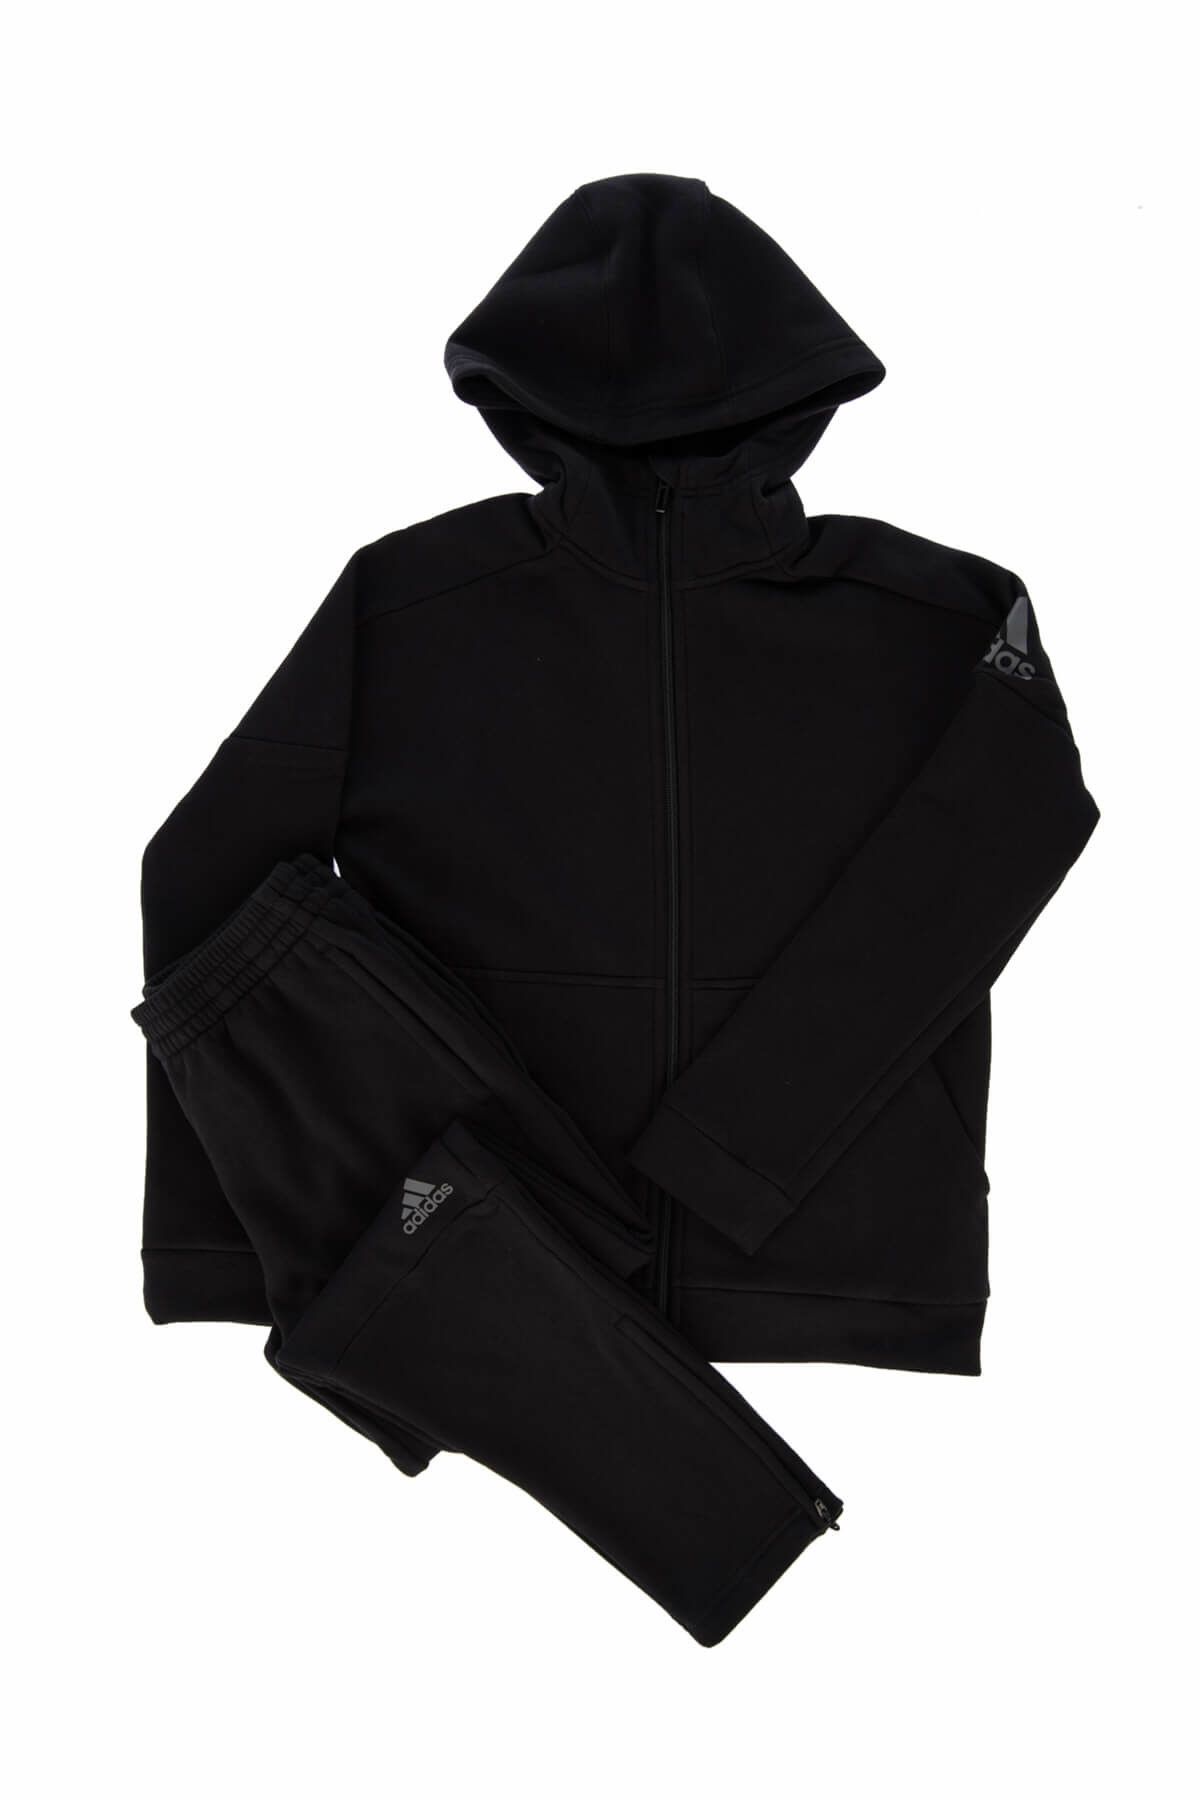 adidas Siyah Unisex Çocuk Eşofman Takımı Yb id Suit